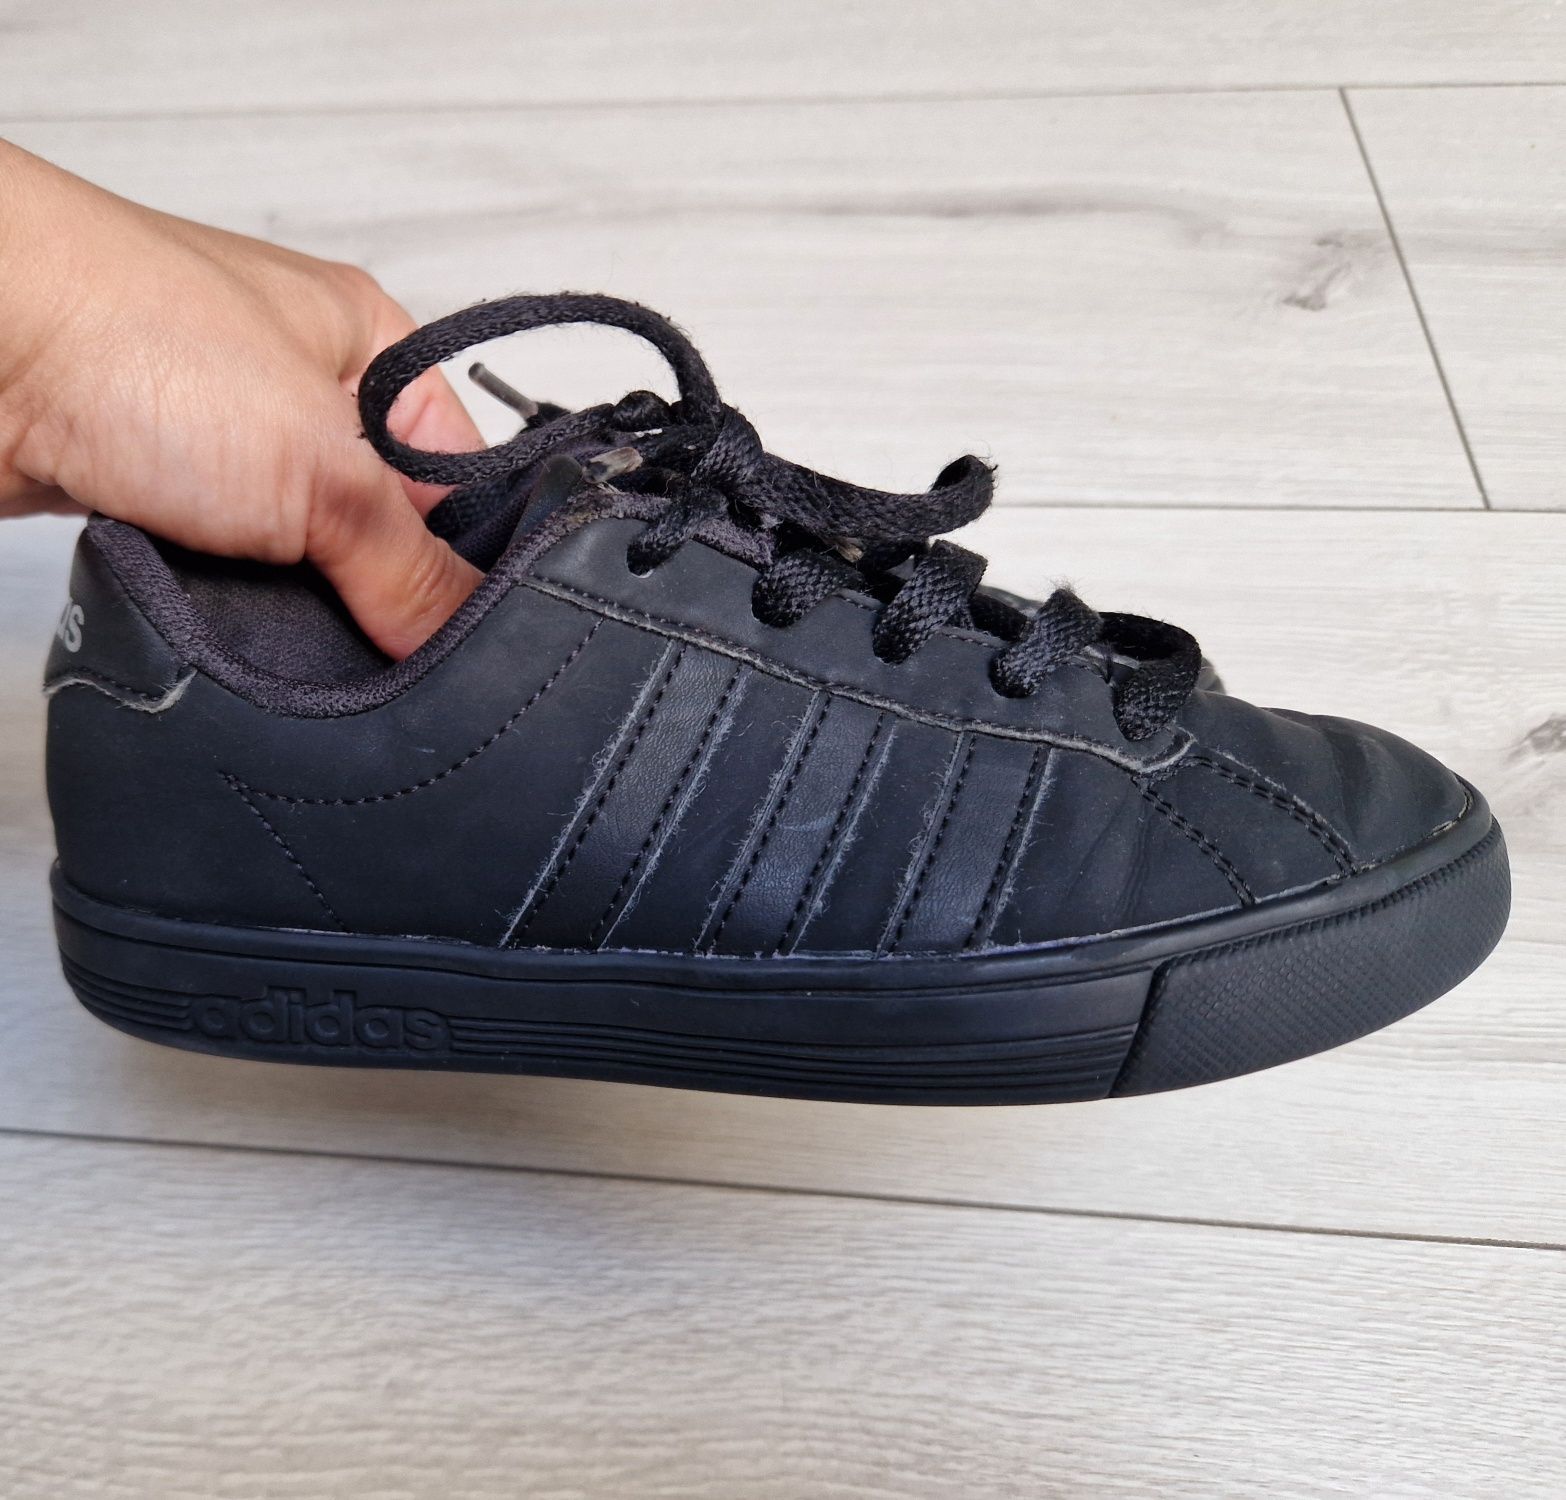 Piękne Czarne buty Adidas r 34 dl wkładki 21cm